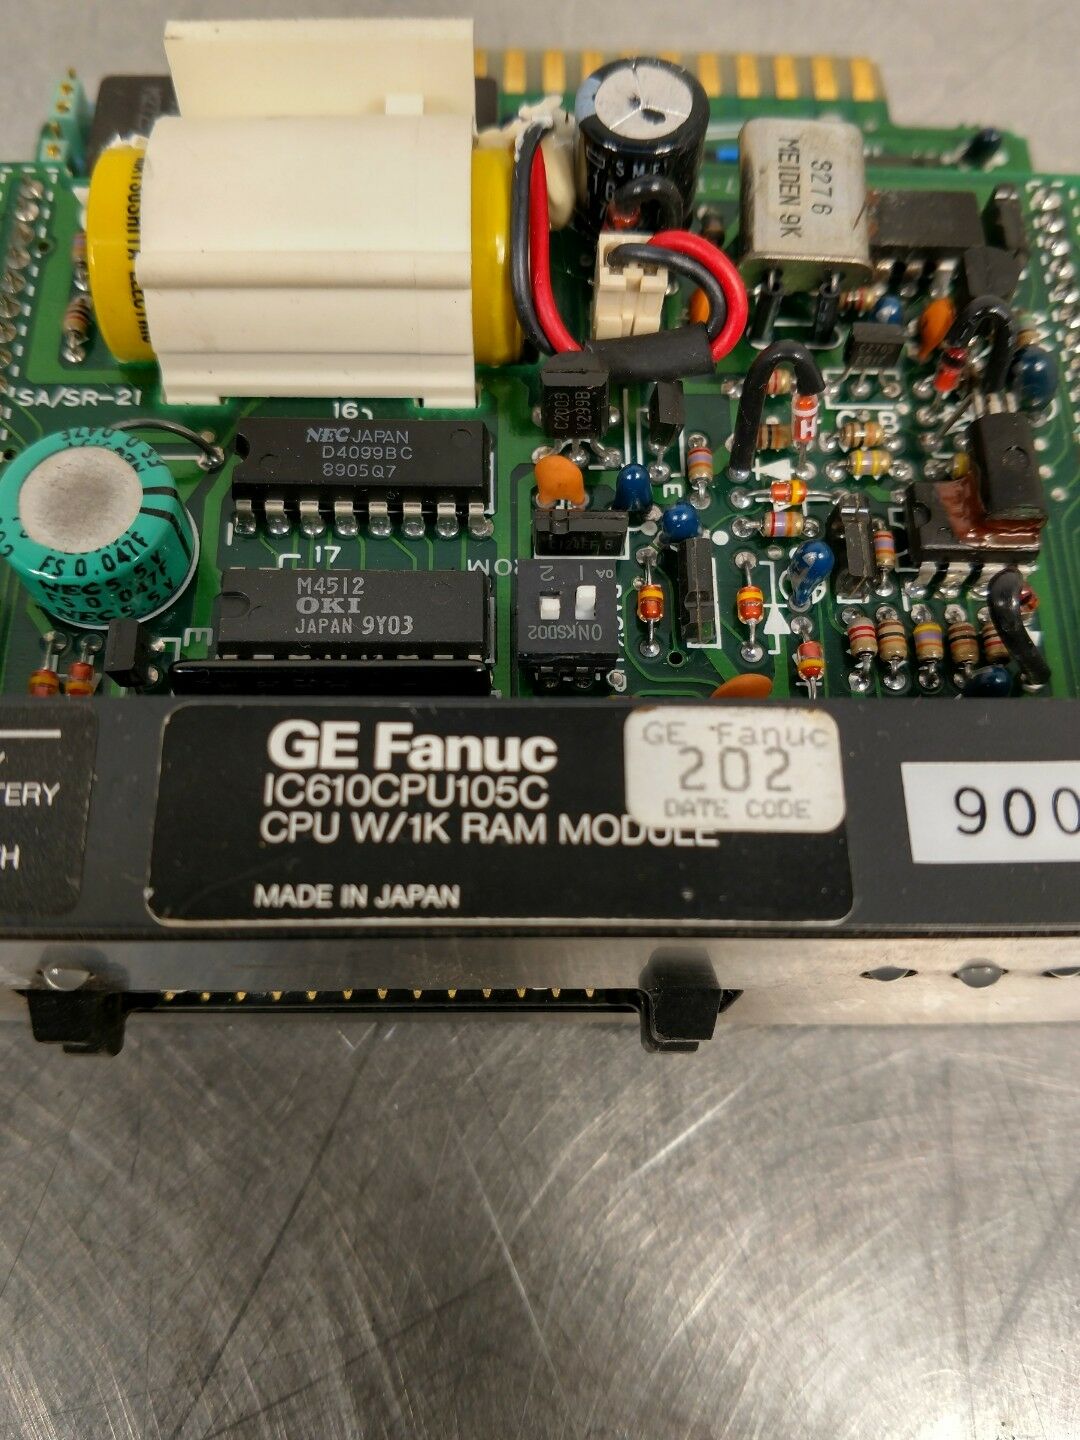 GE FANUC IC610CPU105C CPU W/1K RAM Module 3F